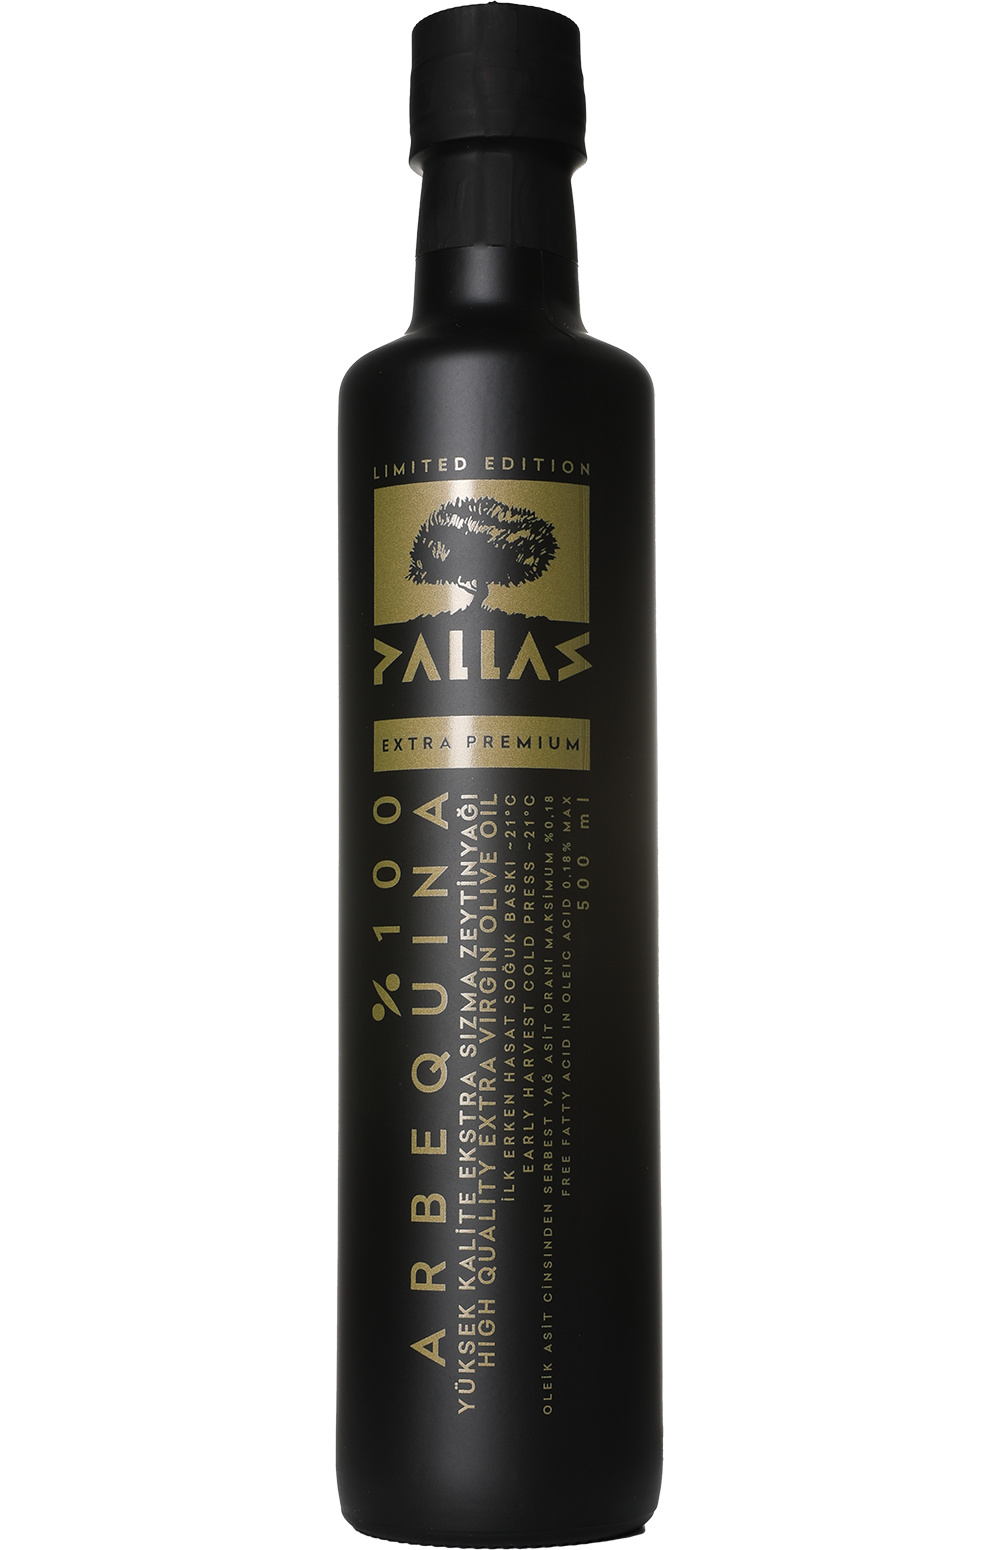 Pallas Premium Olive Oil